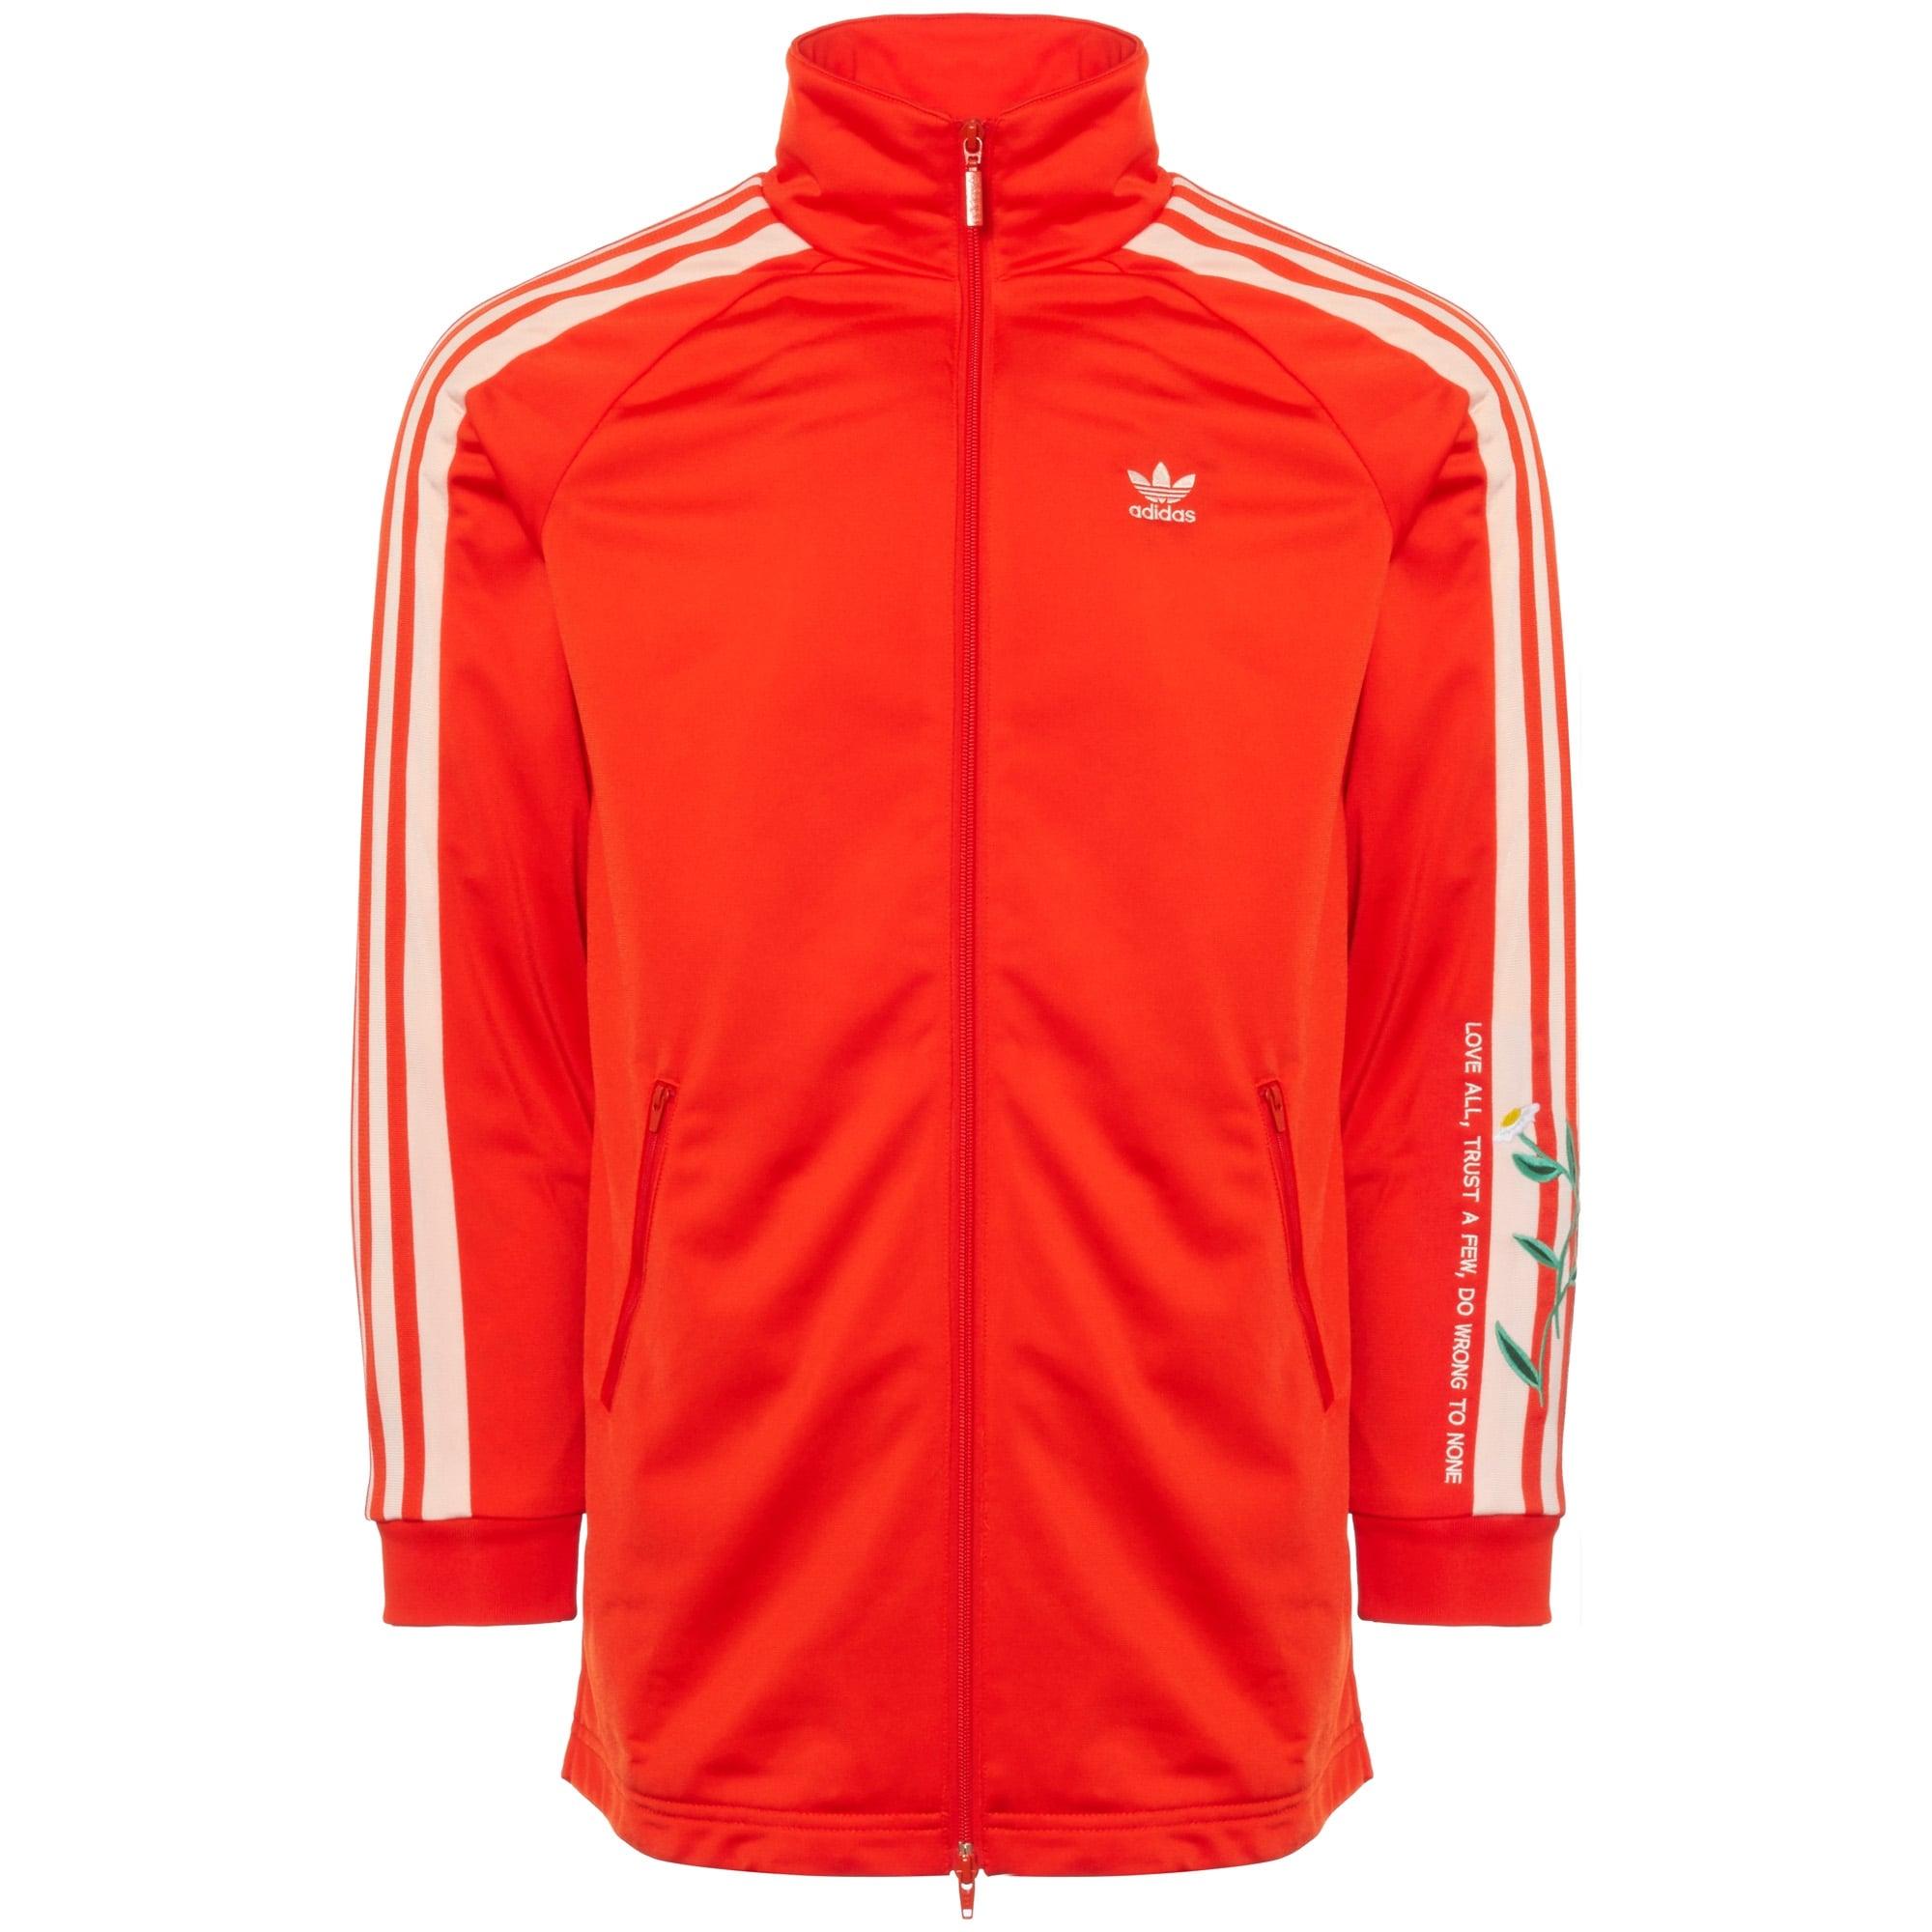 orange adidas track jacket